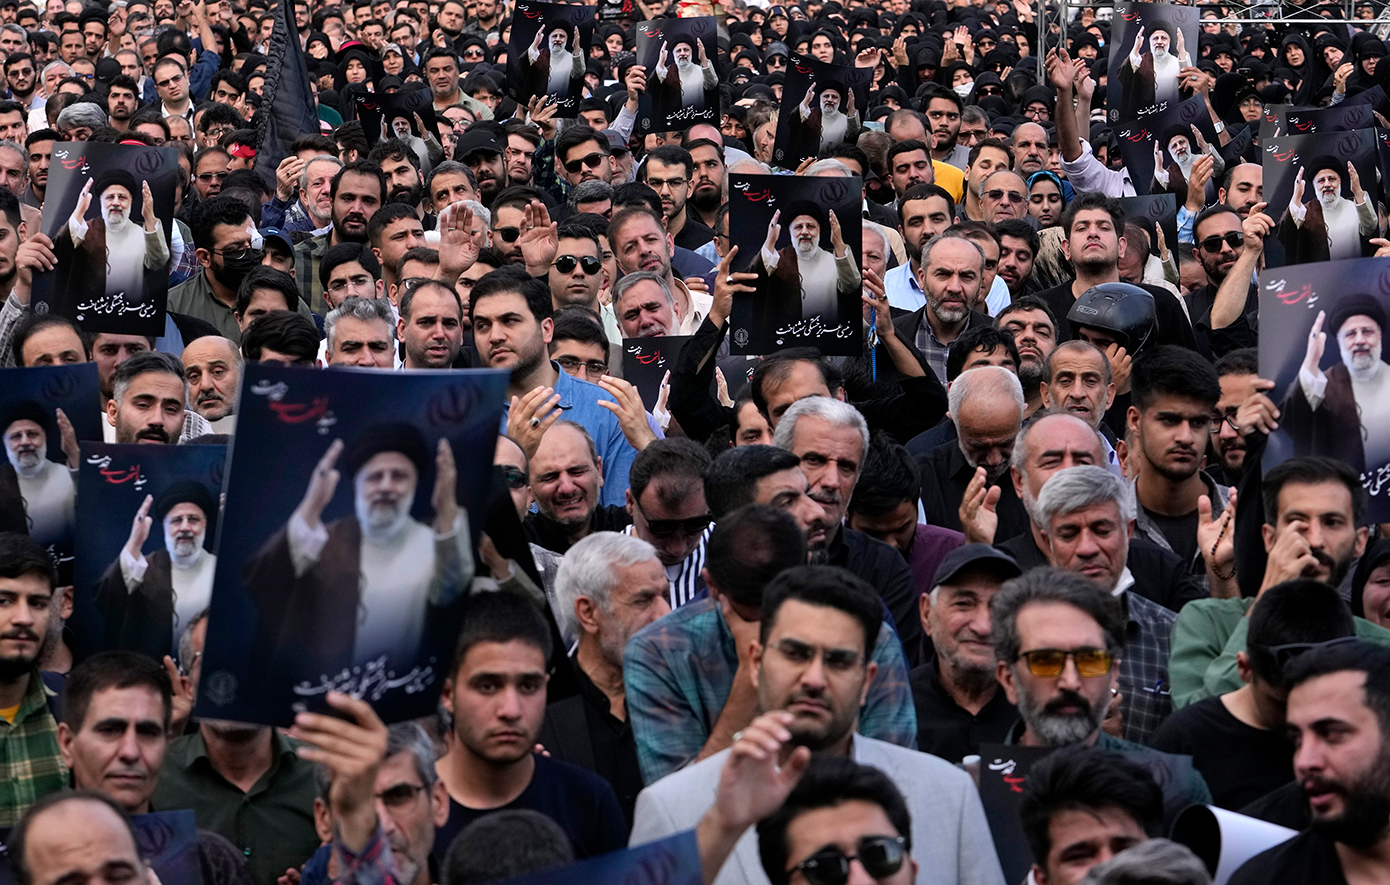 Πώς αντέδρασαν οι Ιρανοί στην είδηση του θανάτου του προέδρου Εμπραχίμ Ραϊσί – Ο θρήνος και οι πανηγυρισμοί